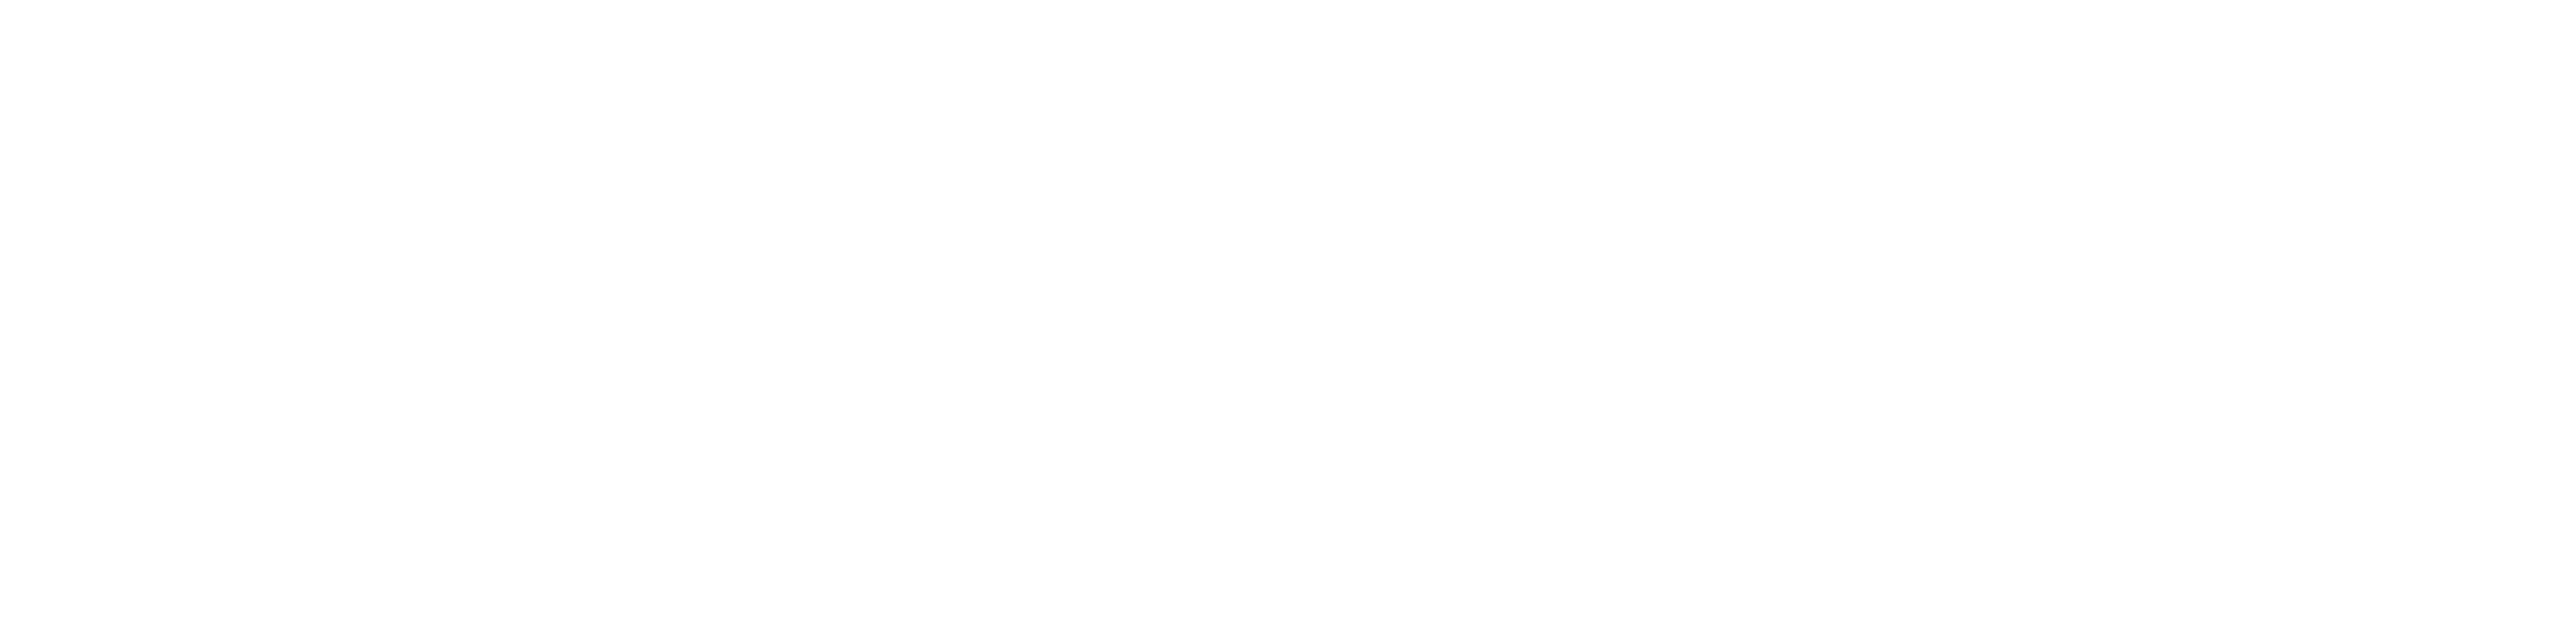 Rebels Valley